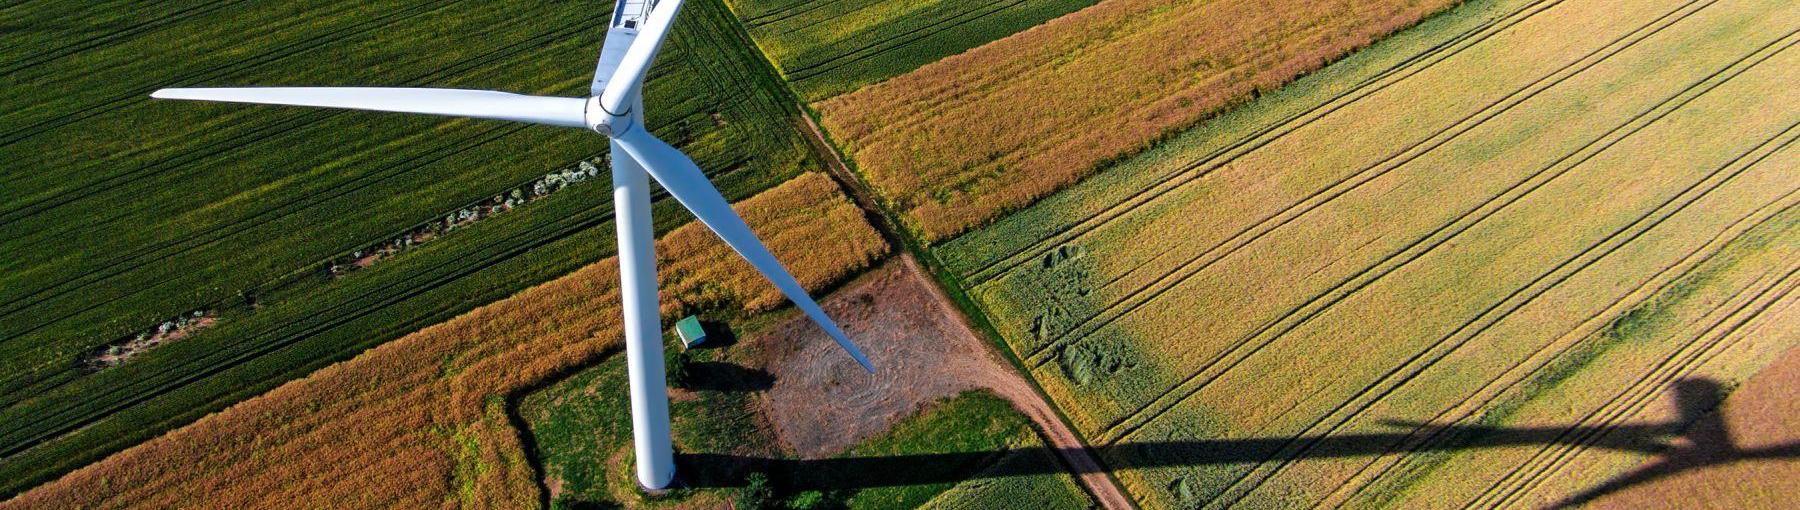 Czy ustawa o OZE rozwiąże problemy wytwórców zielonej energii? Fot. Shutterstock